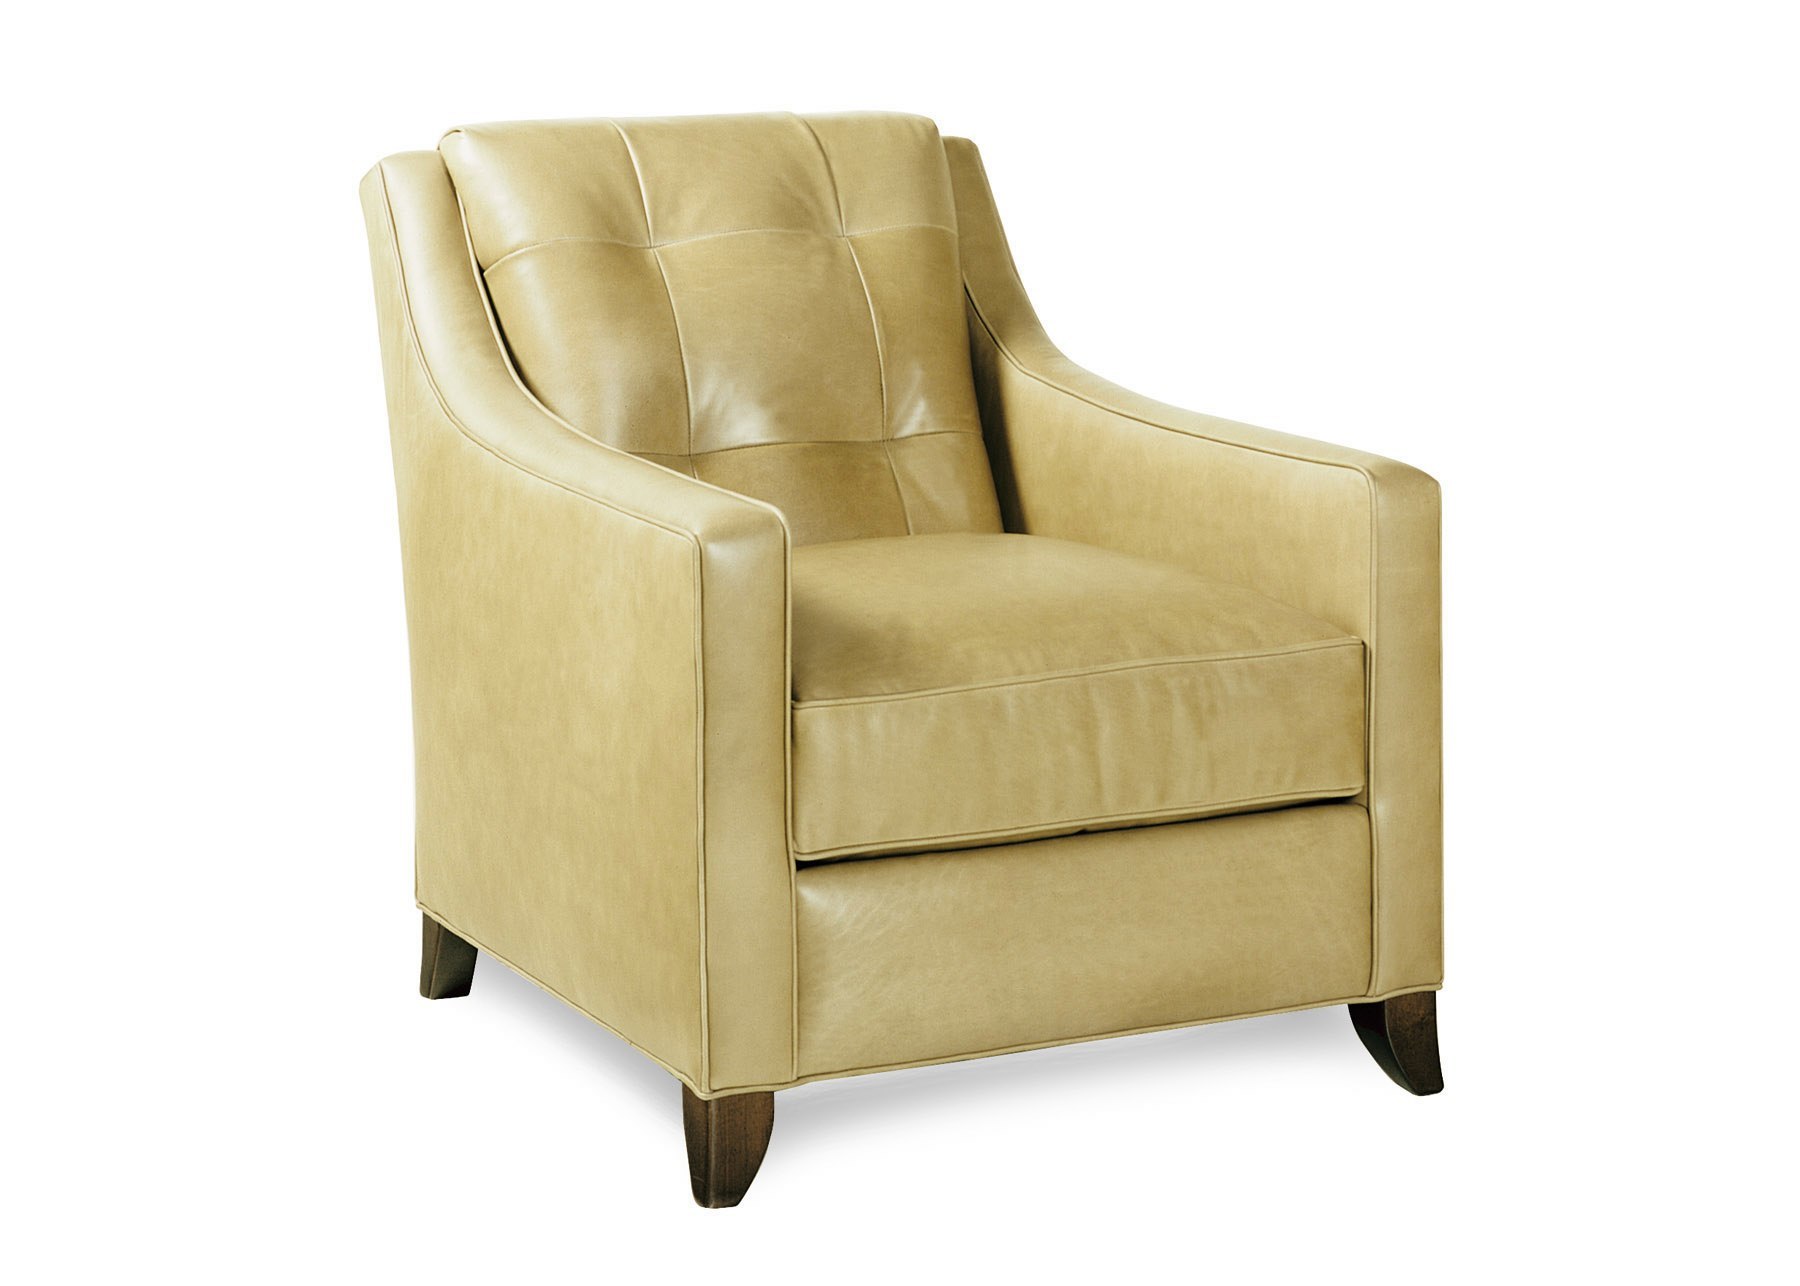 Cabot Wrenn Legends Ritz Lounge Chair